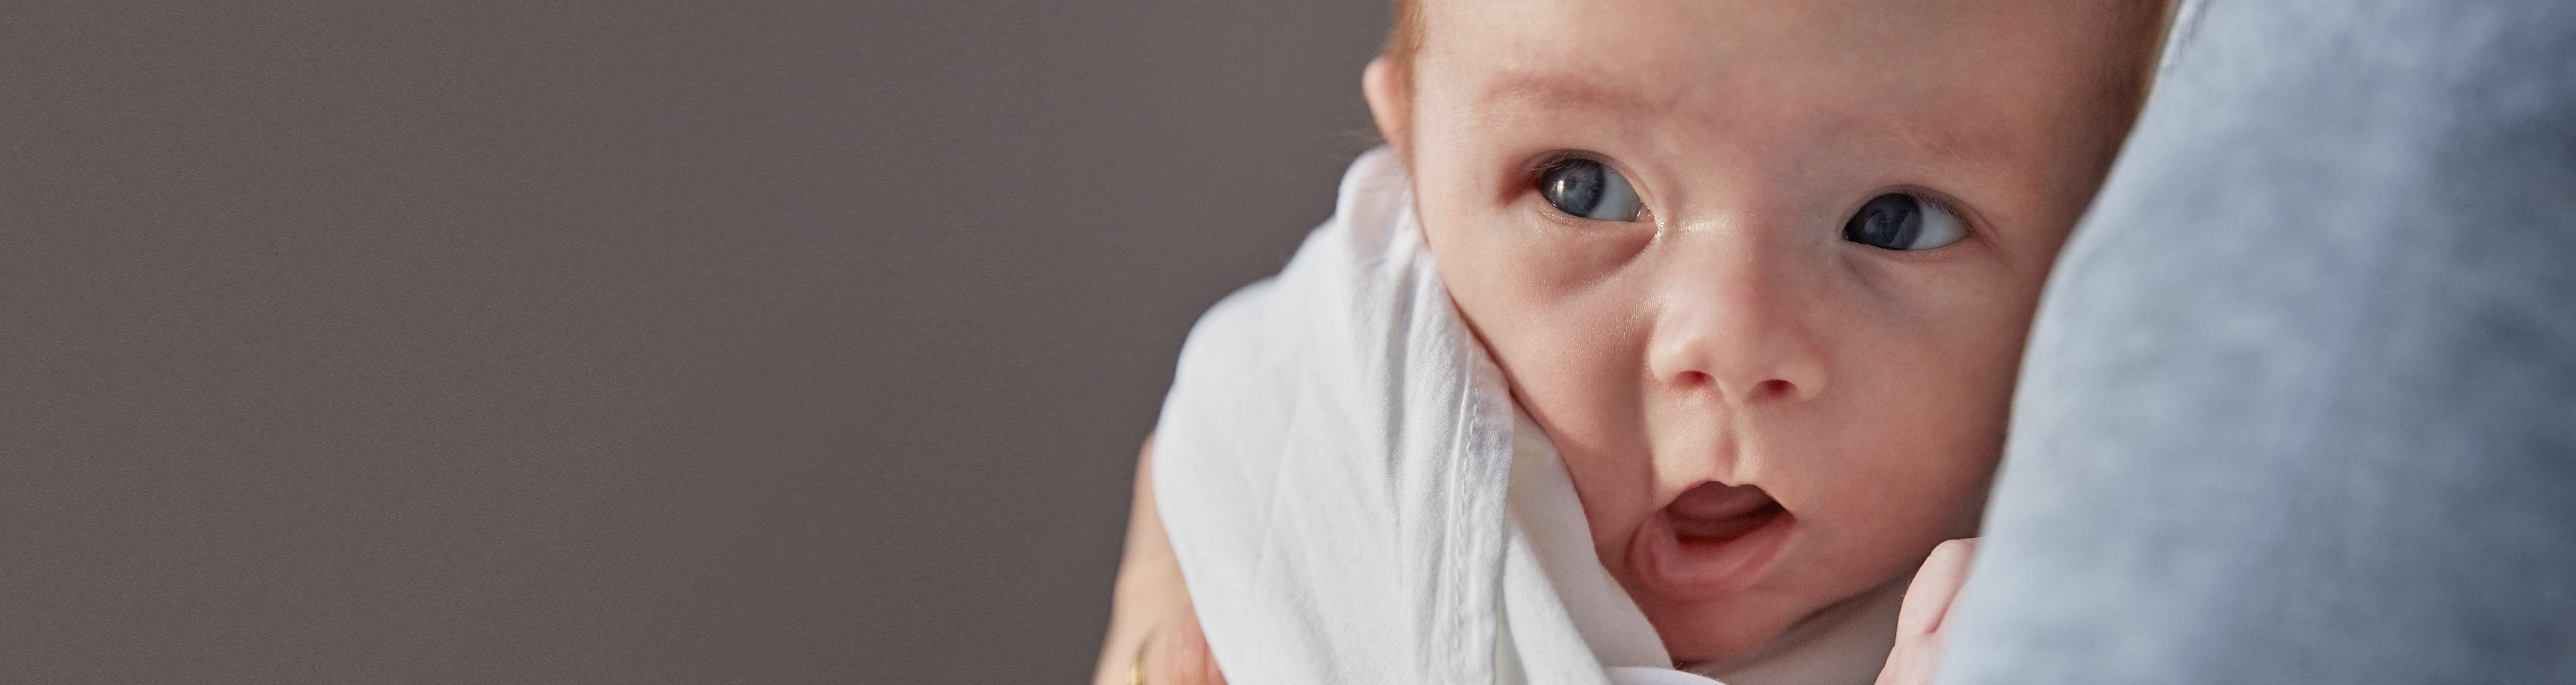 A refluxos baba tünetei és kezelése | Brendon babaáruházak